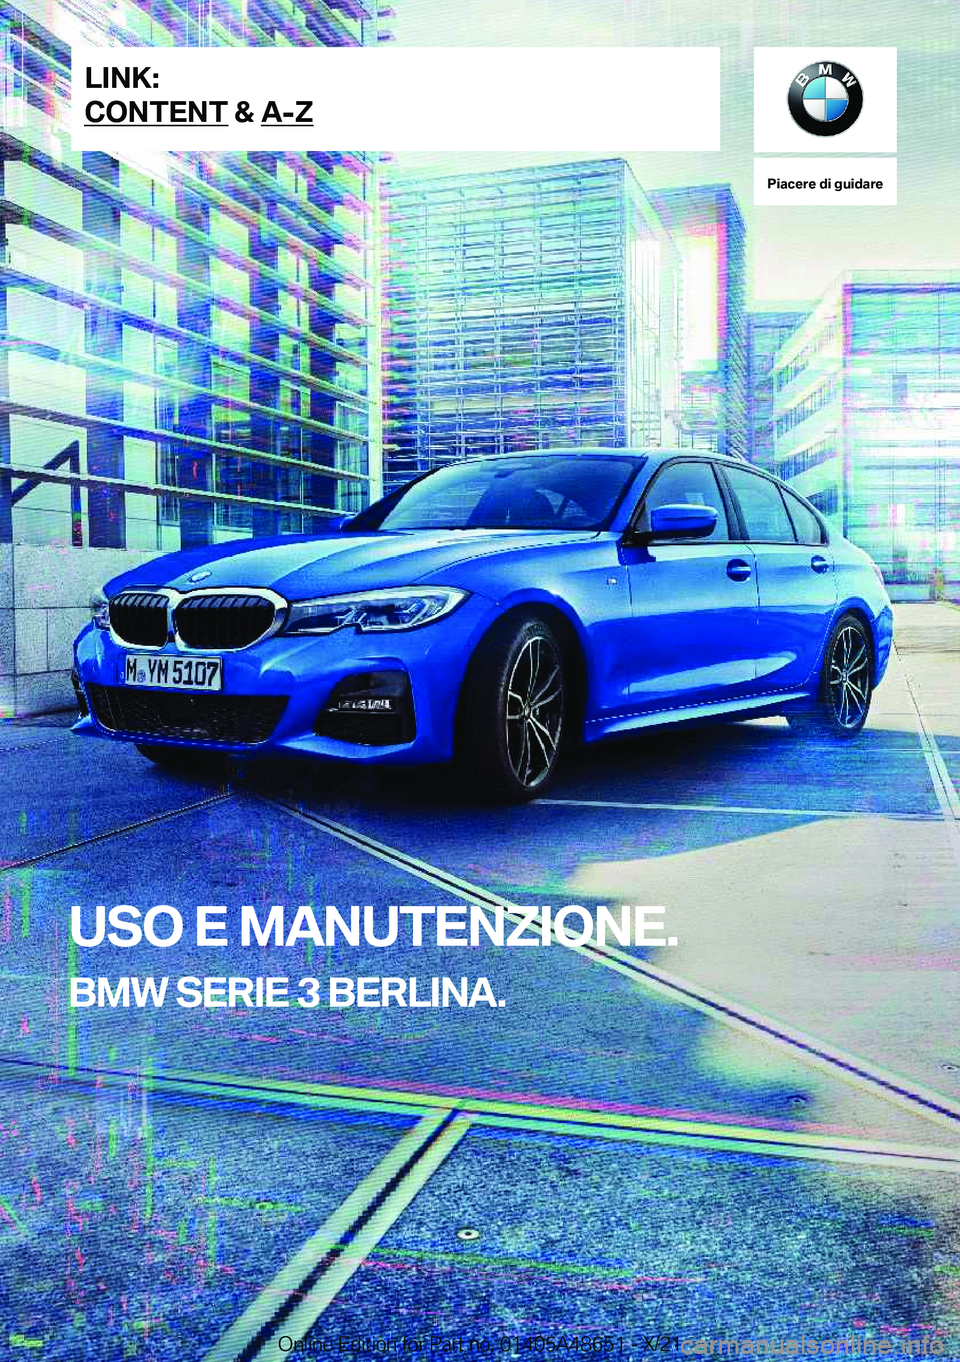 BMW 3 SERIES 2022  Libretti Di Uso E manutenzione (in Italian) �P�i�a�c�e�r�e��d�i��g�u�i�d�a�r�e
�U�S�O��E��M�A�N�U�T�E�N�Z�I�O�N�E�.
�B�M�W��S�E�R�I�E��3��B�E�R�L�I�N�A�.�L�I�N�K�:
�C�O�N�T�E�N�T��&��A�-�Z�O�n�l�i�n�e��E�d�i�t�i�o�n��f�o�r��P�a�r�t�